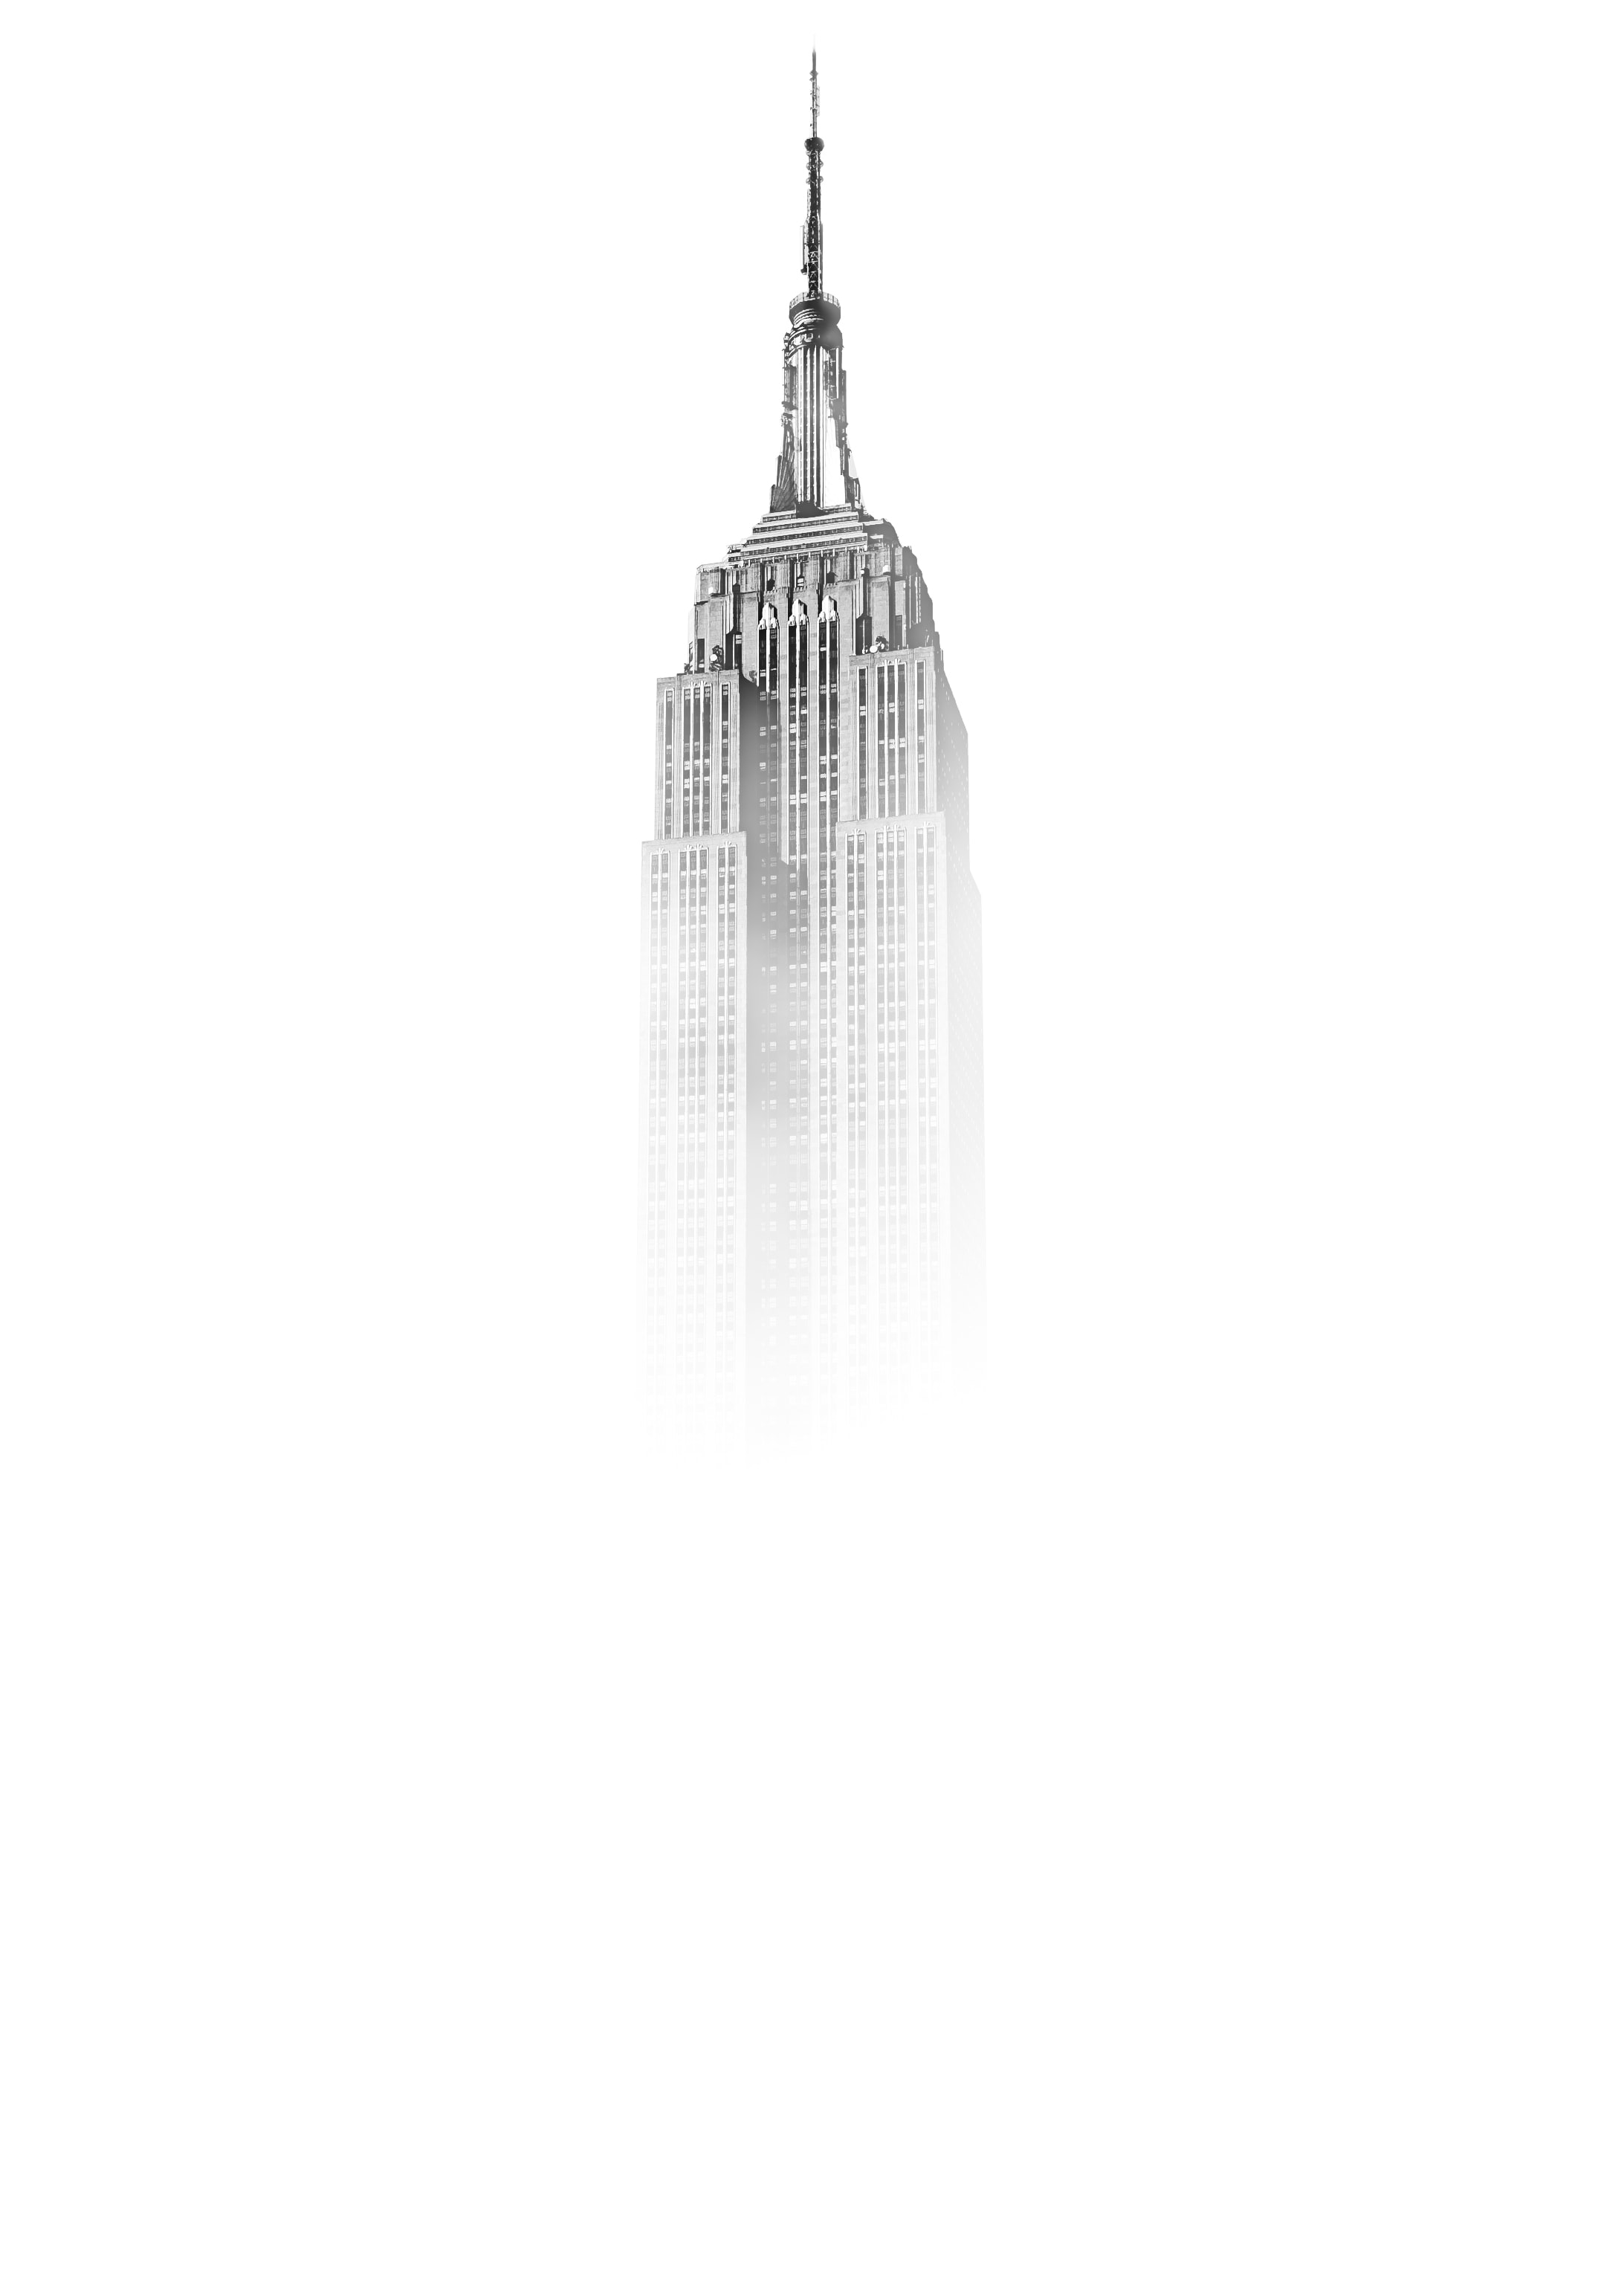 General 2185x3059 Empire State Building New York City skyscraper monochrome USA white background white mist